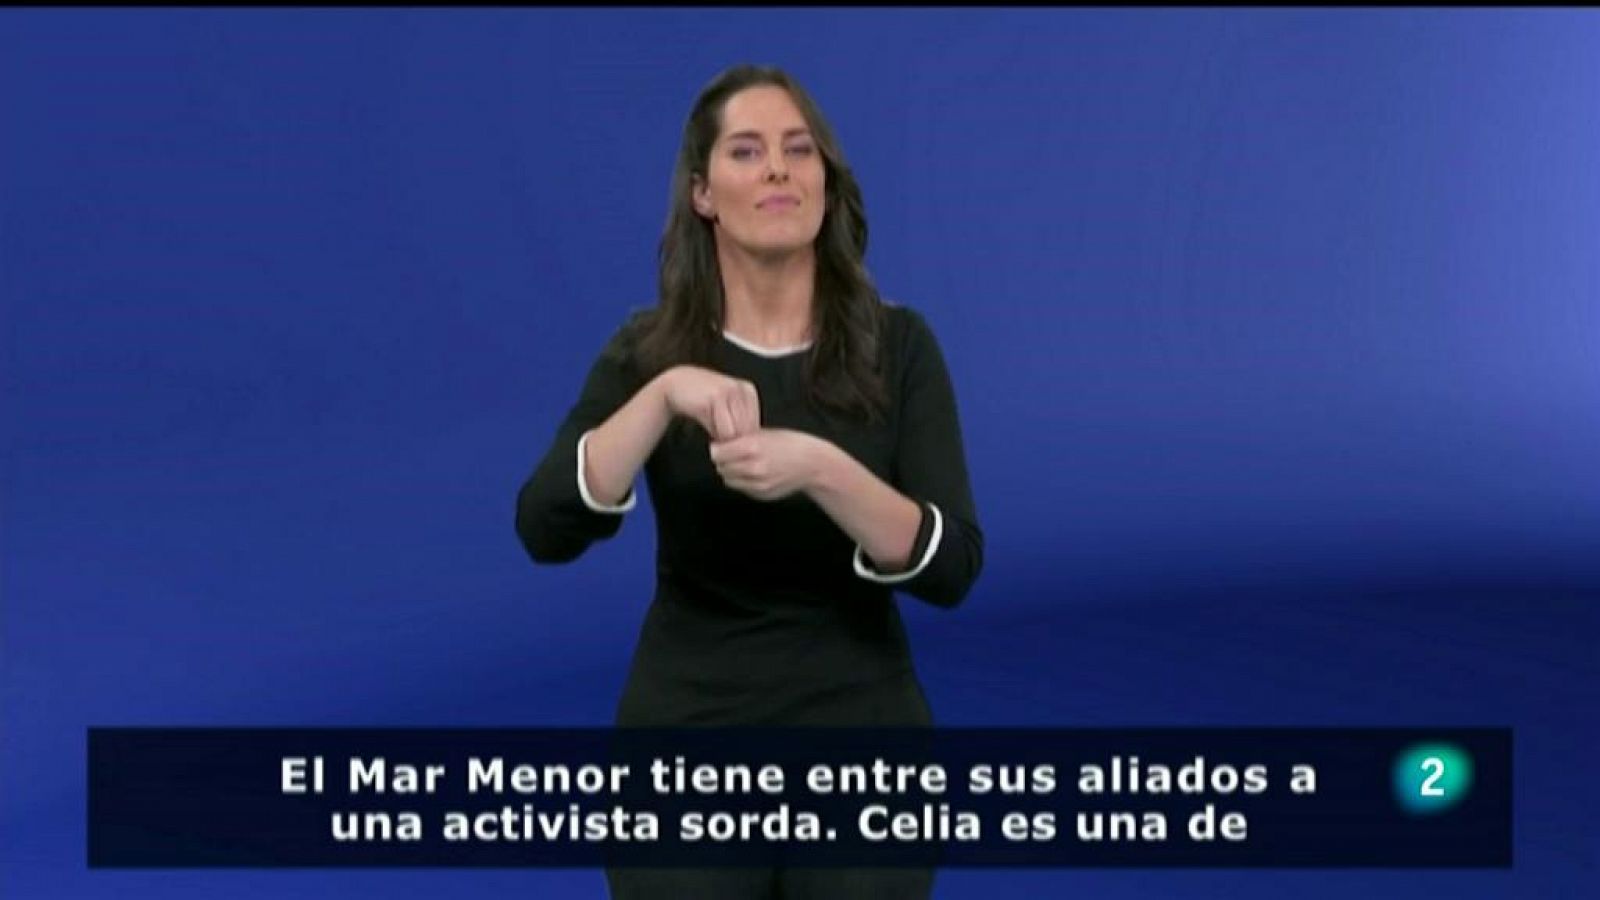 Ecologia: una activista sorda en la lucha por salvar el Mar Menor